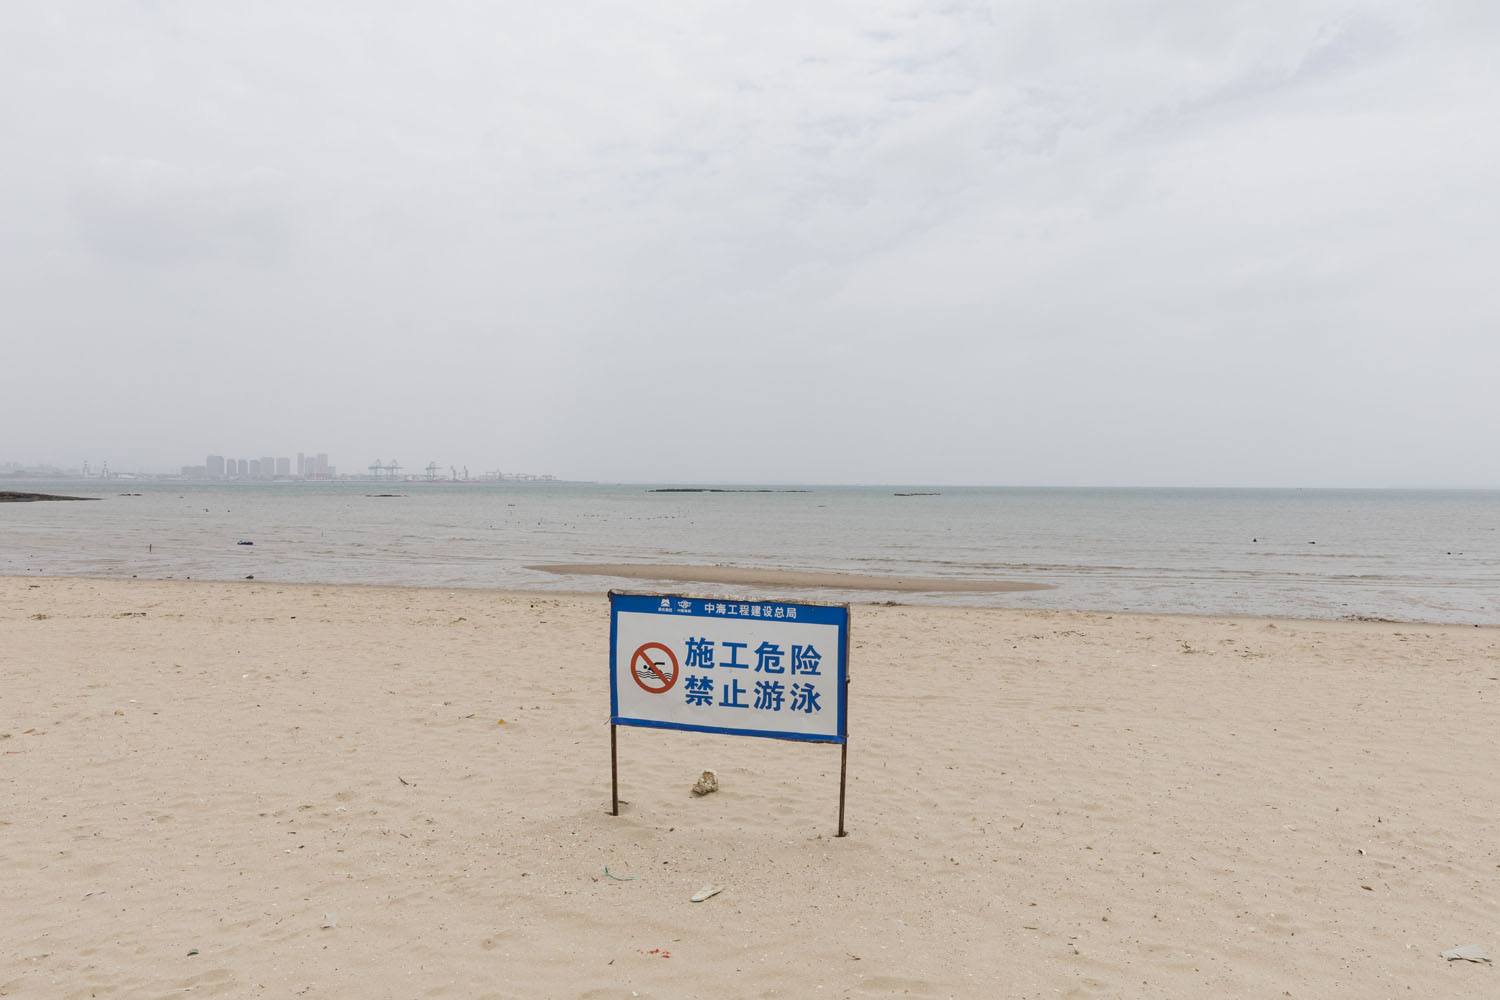 Warning signage at Guanyinshan Fantasy Beach. Xiamen, China. 2018.